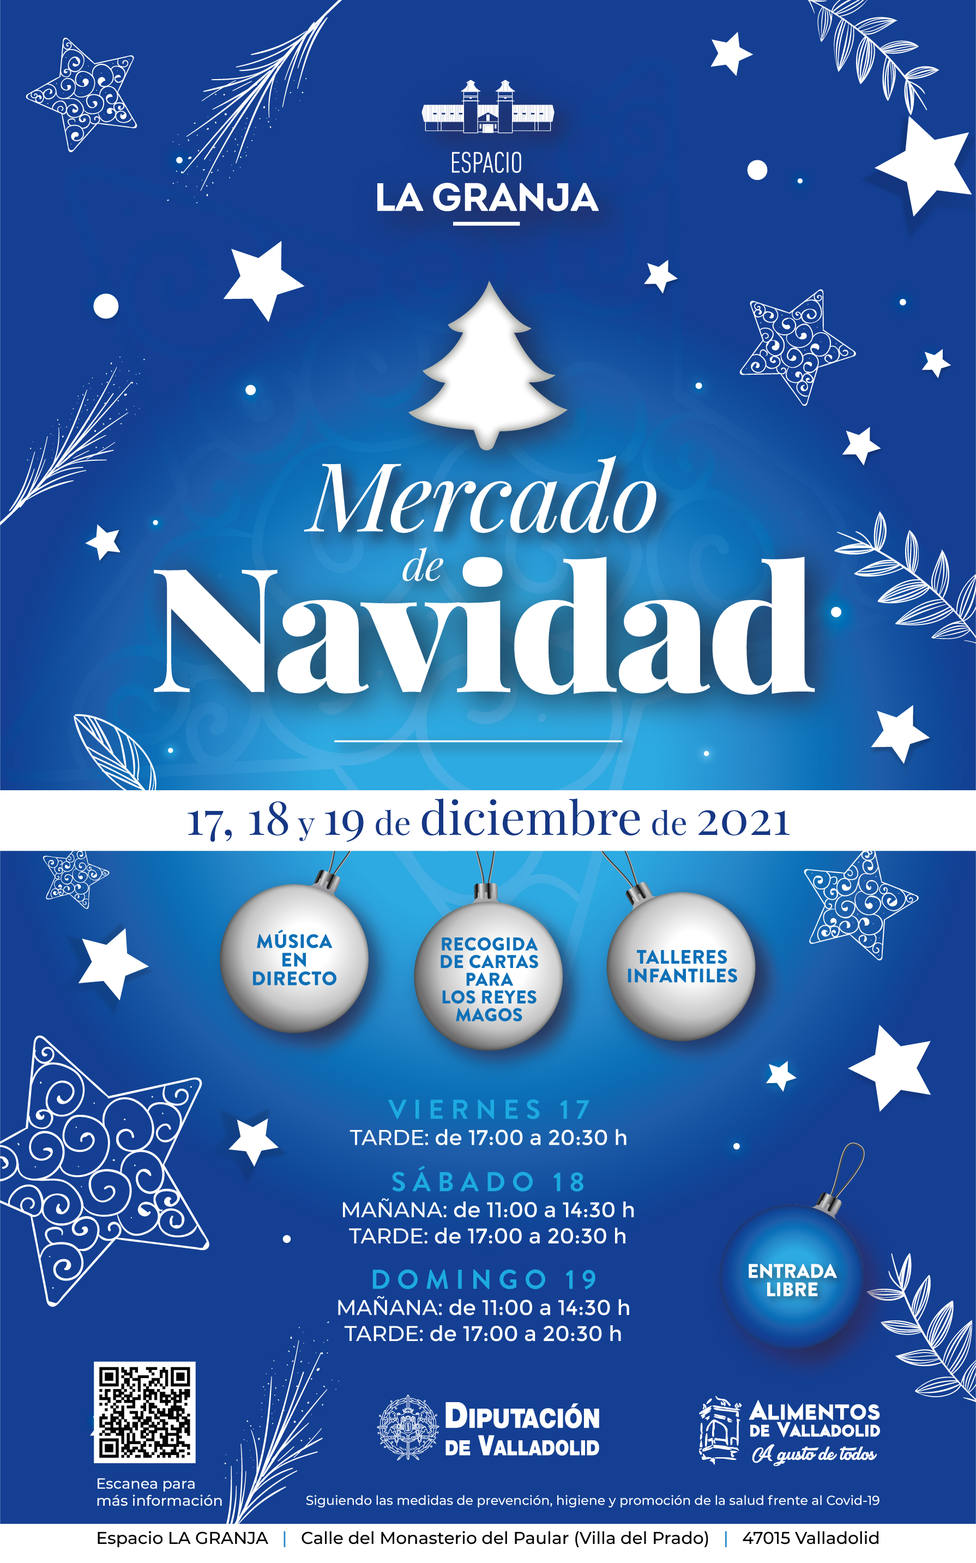 El I Mercado de Navidad de Alimentos de Valladolid se celebrará del 17 al 19